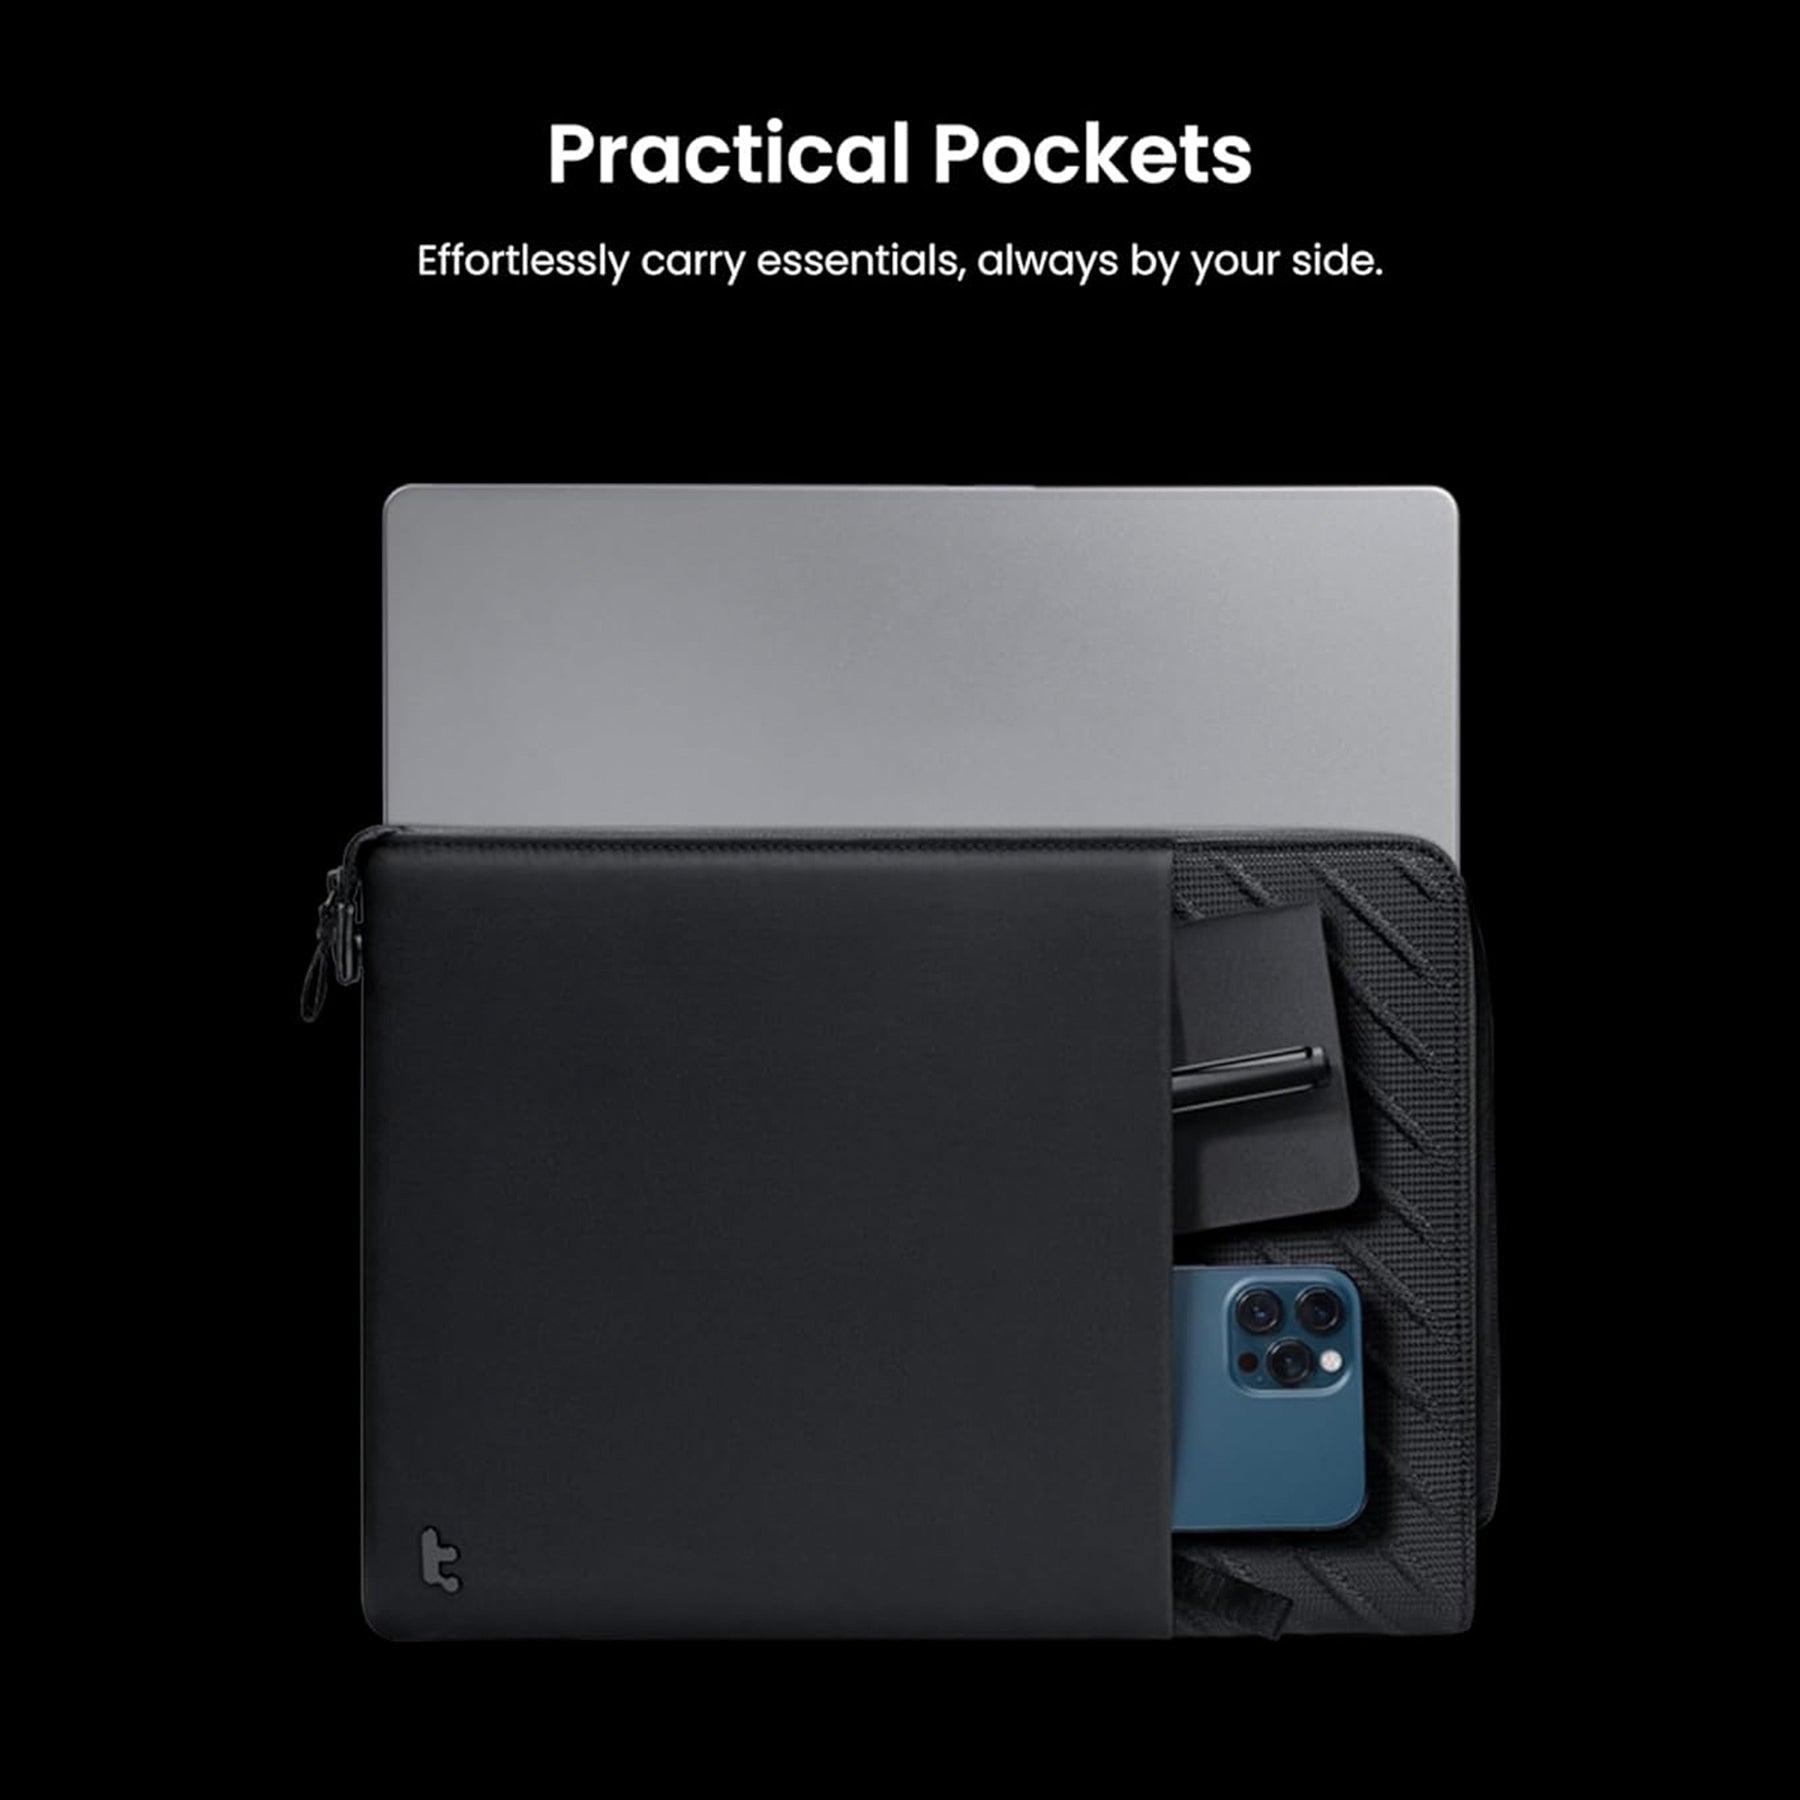 tomtoc 14 Inch Voyage Laptop Sleeve / MacBook Sleeve - iPad Pro / MacBook Air & MacBook Pro M1 M2